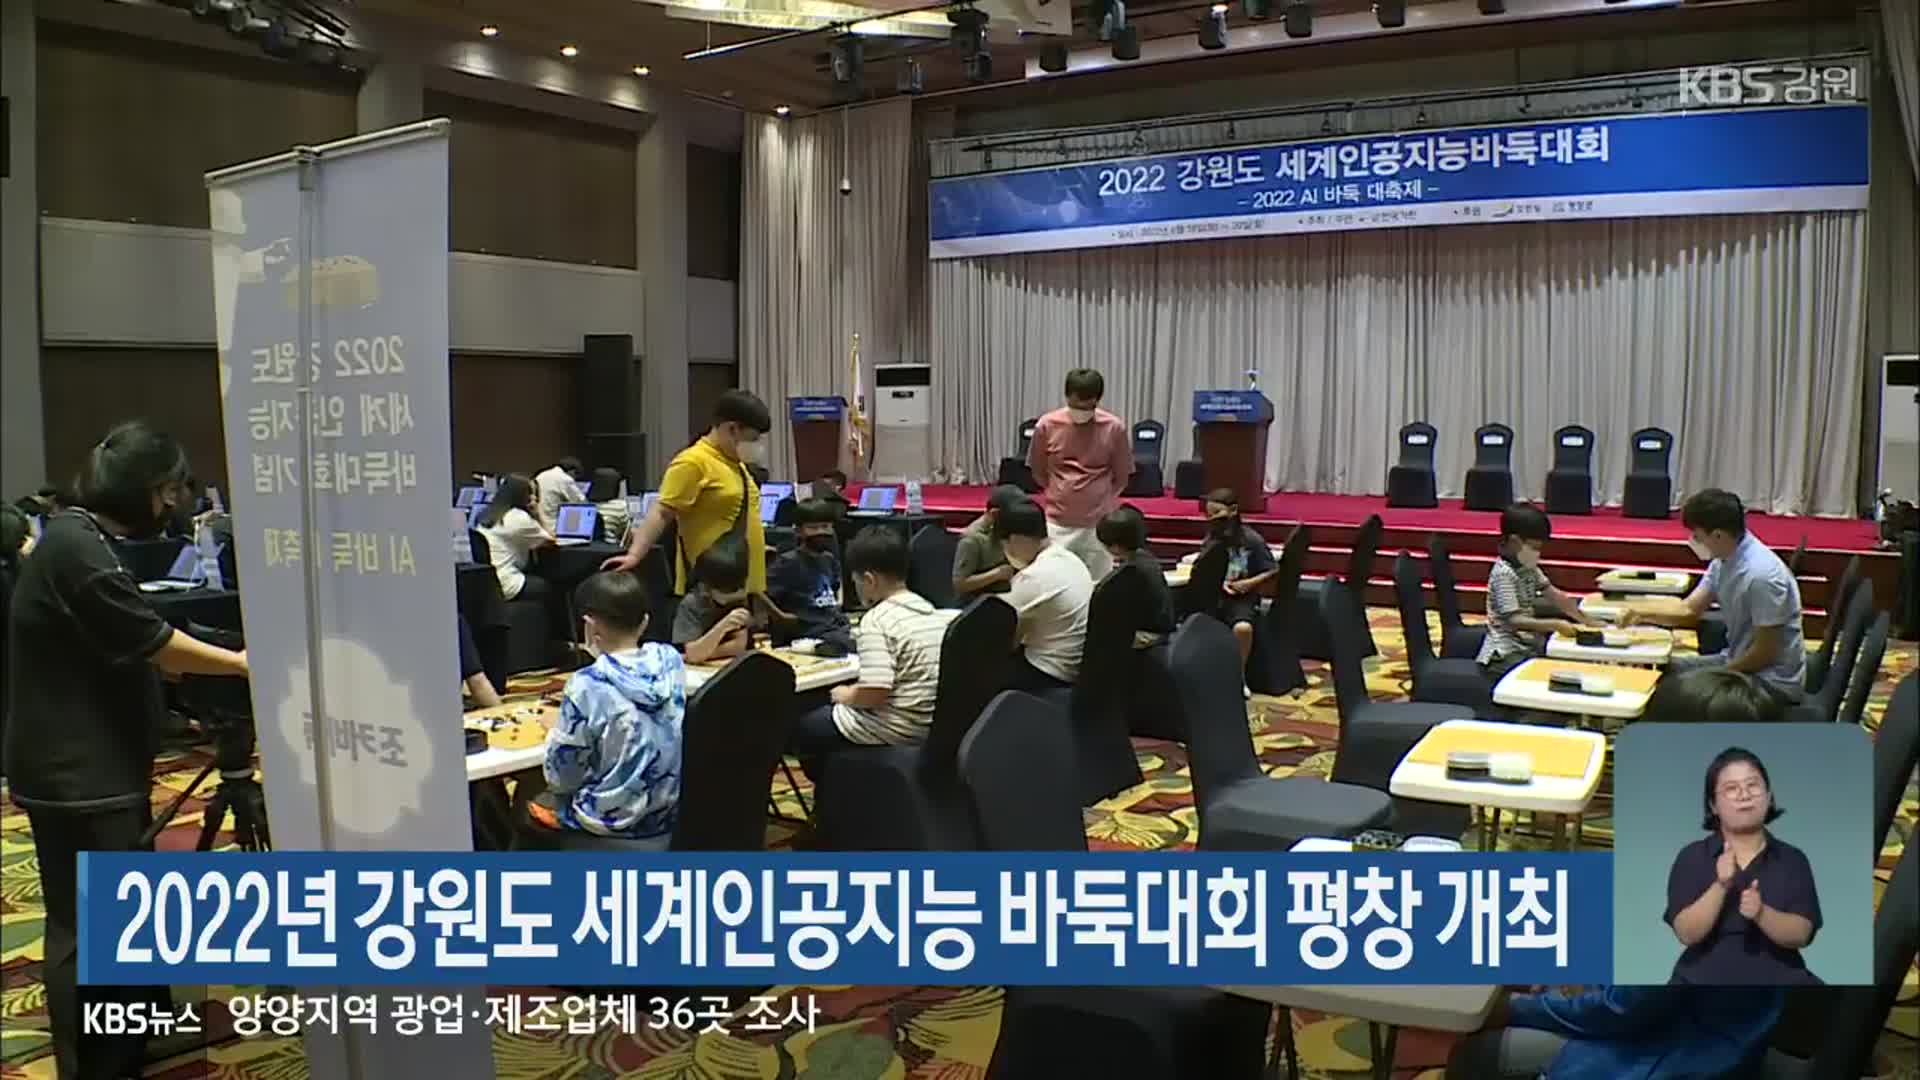 2022년 강원도 세계인공지능 바둑대회 평창 개최